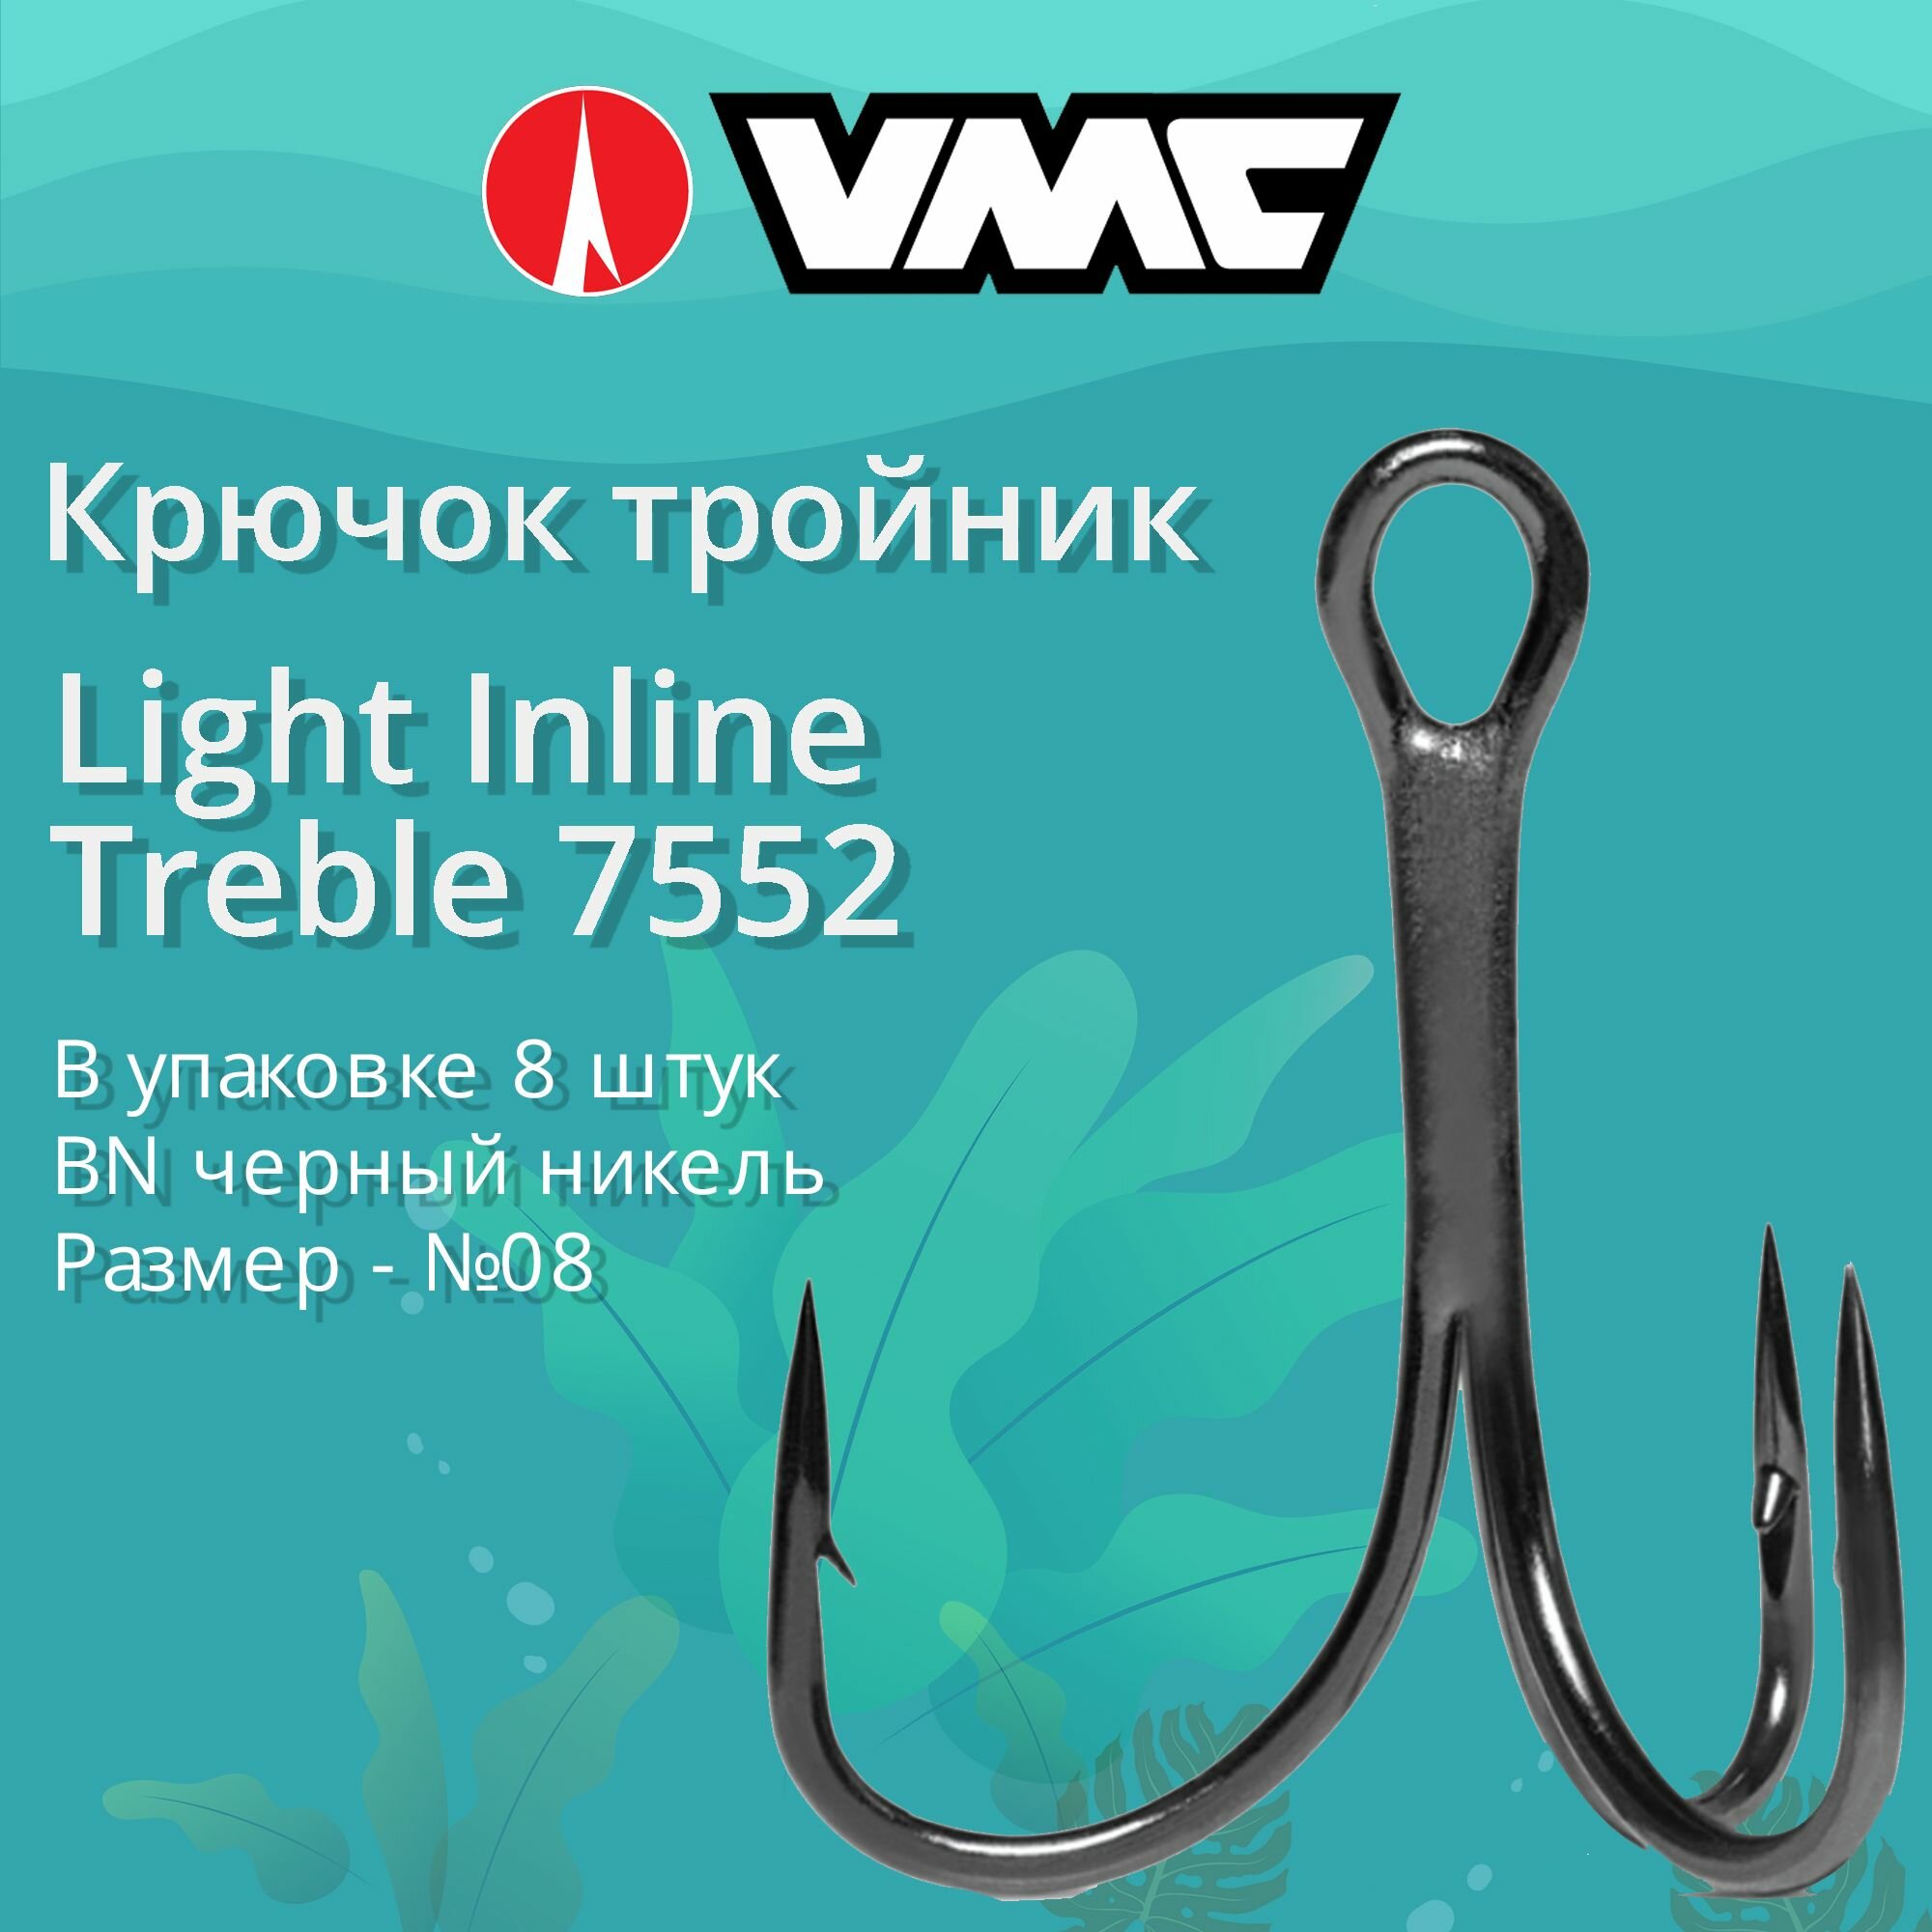 Крючки для рыбалки (тройник) VMC Light Inline Treble 7552 BN (черн. никель) №08 (упаковка 8 штук)